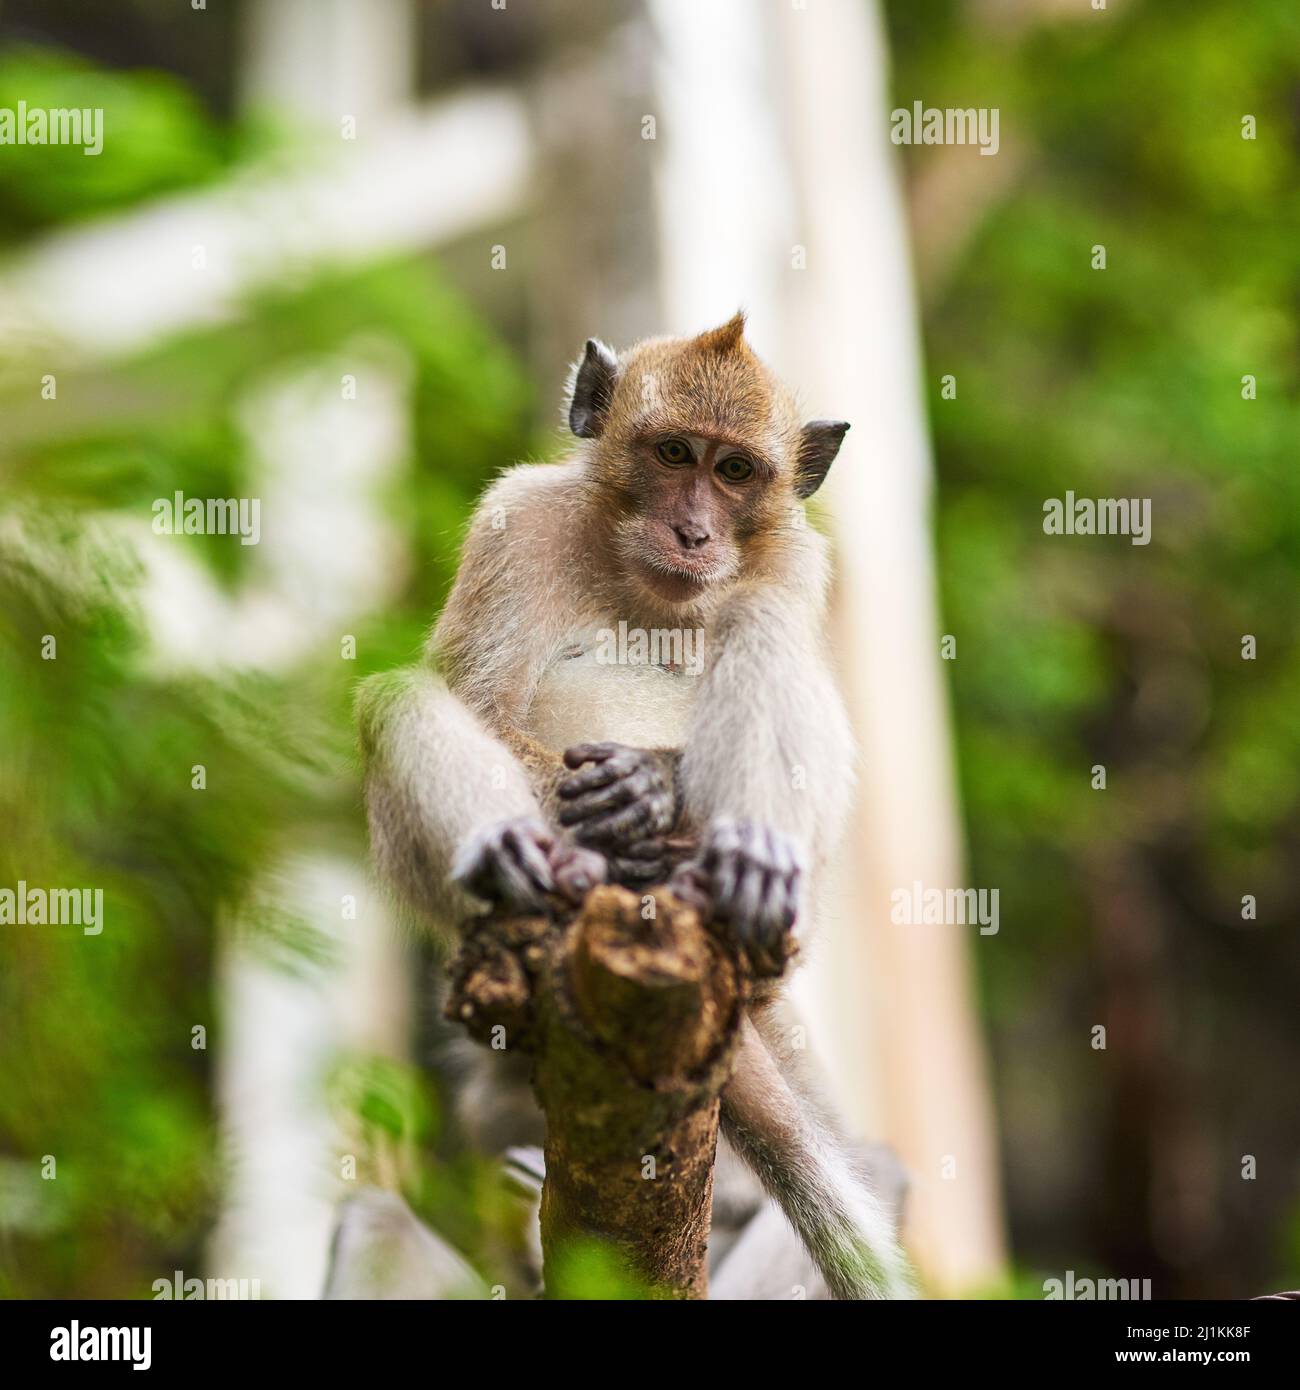 Très proche et personnel. Photo d'un petit singe assis dans un arbre. Banque D'Images